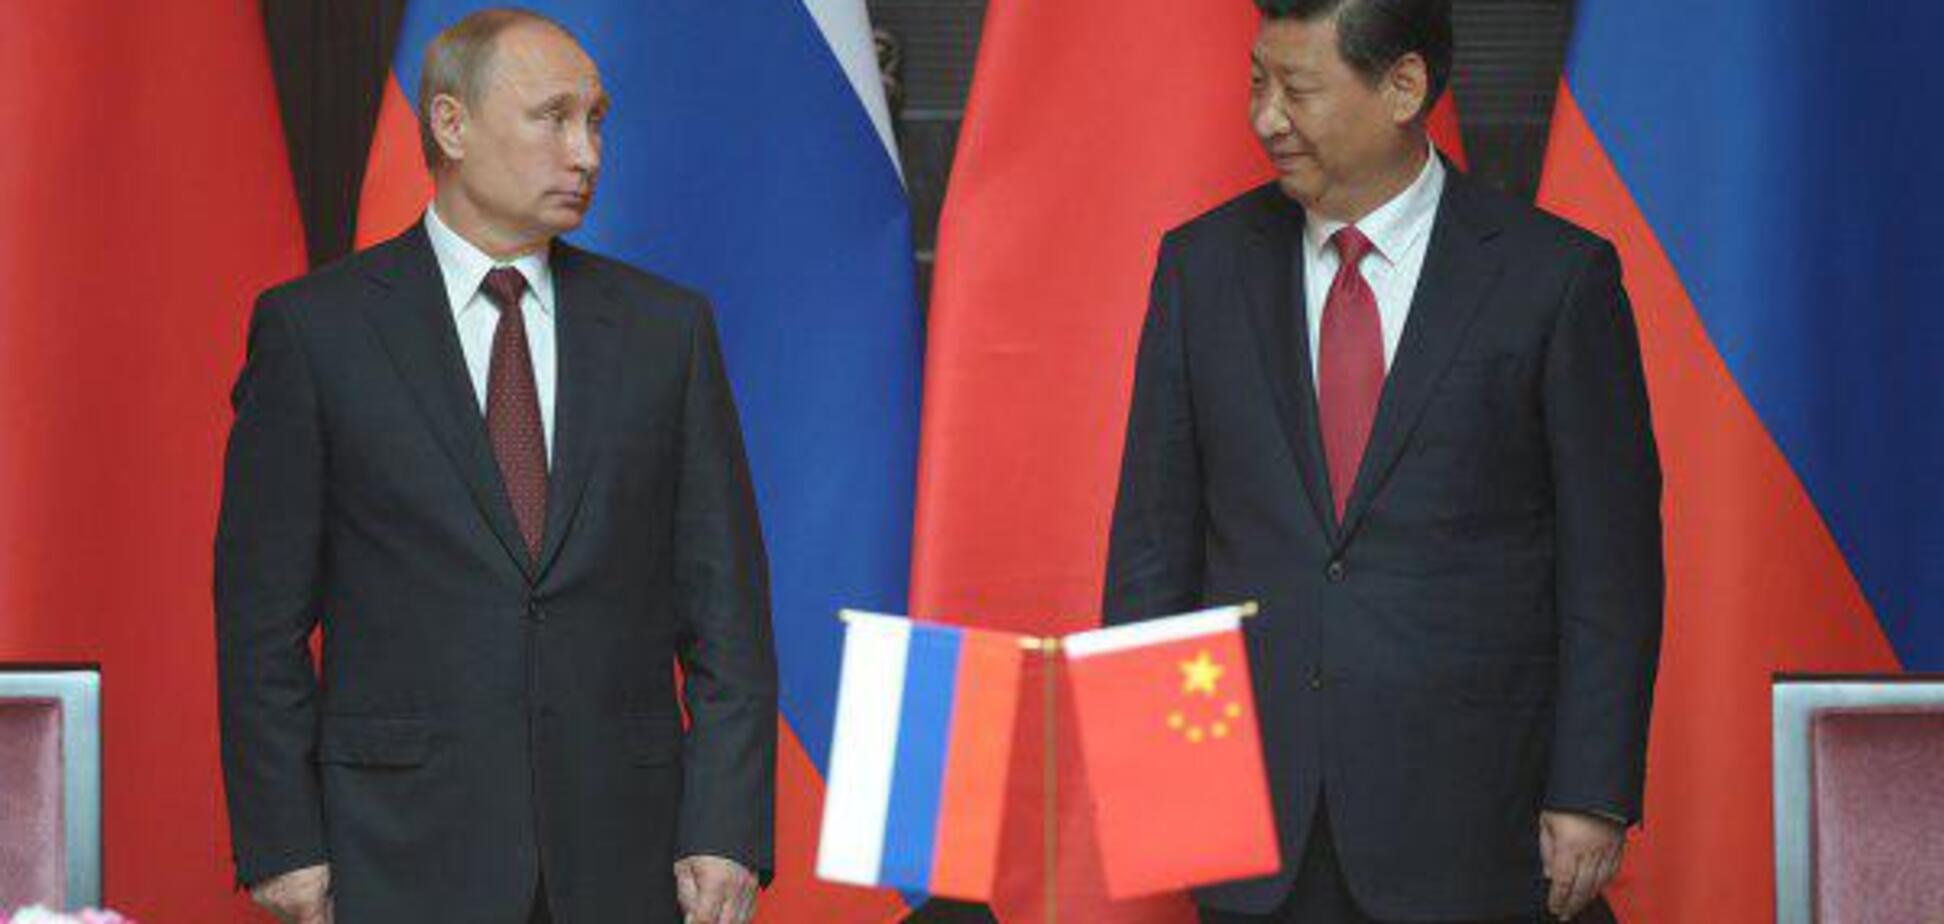 Китай потребует территории России. Процесс уже пошел - генерал